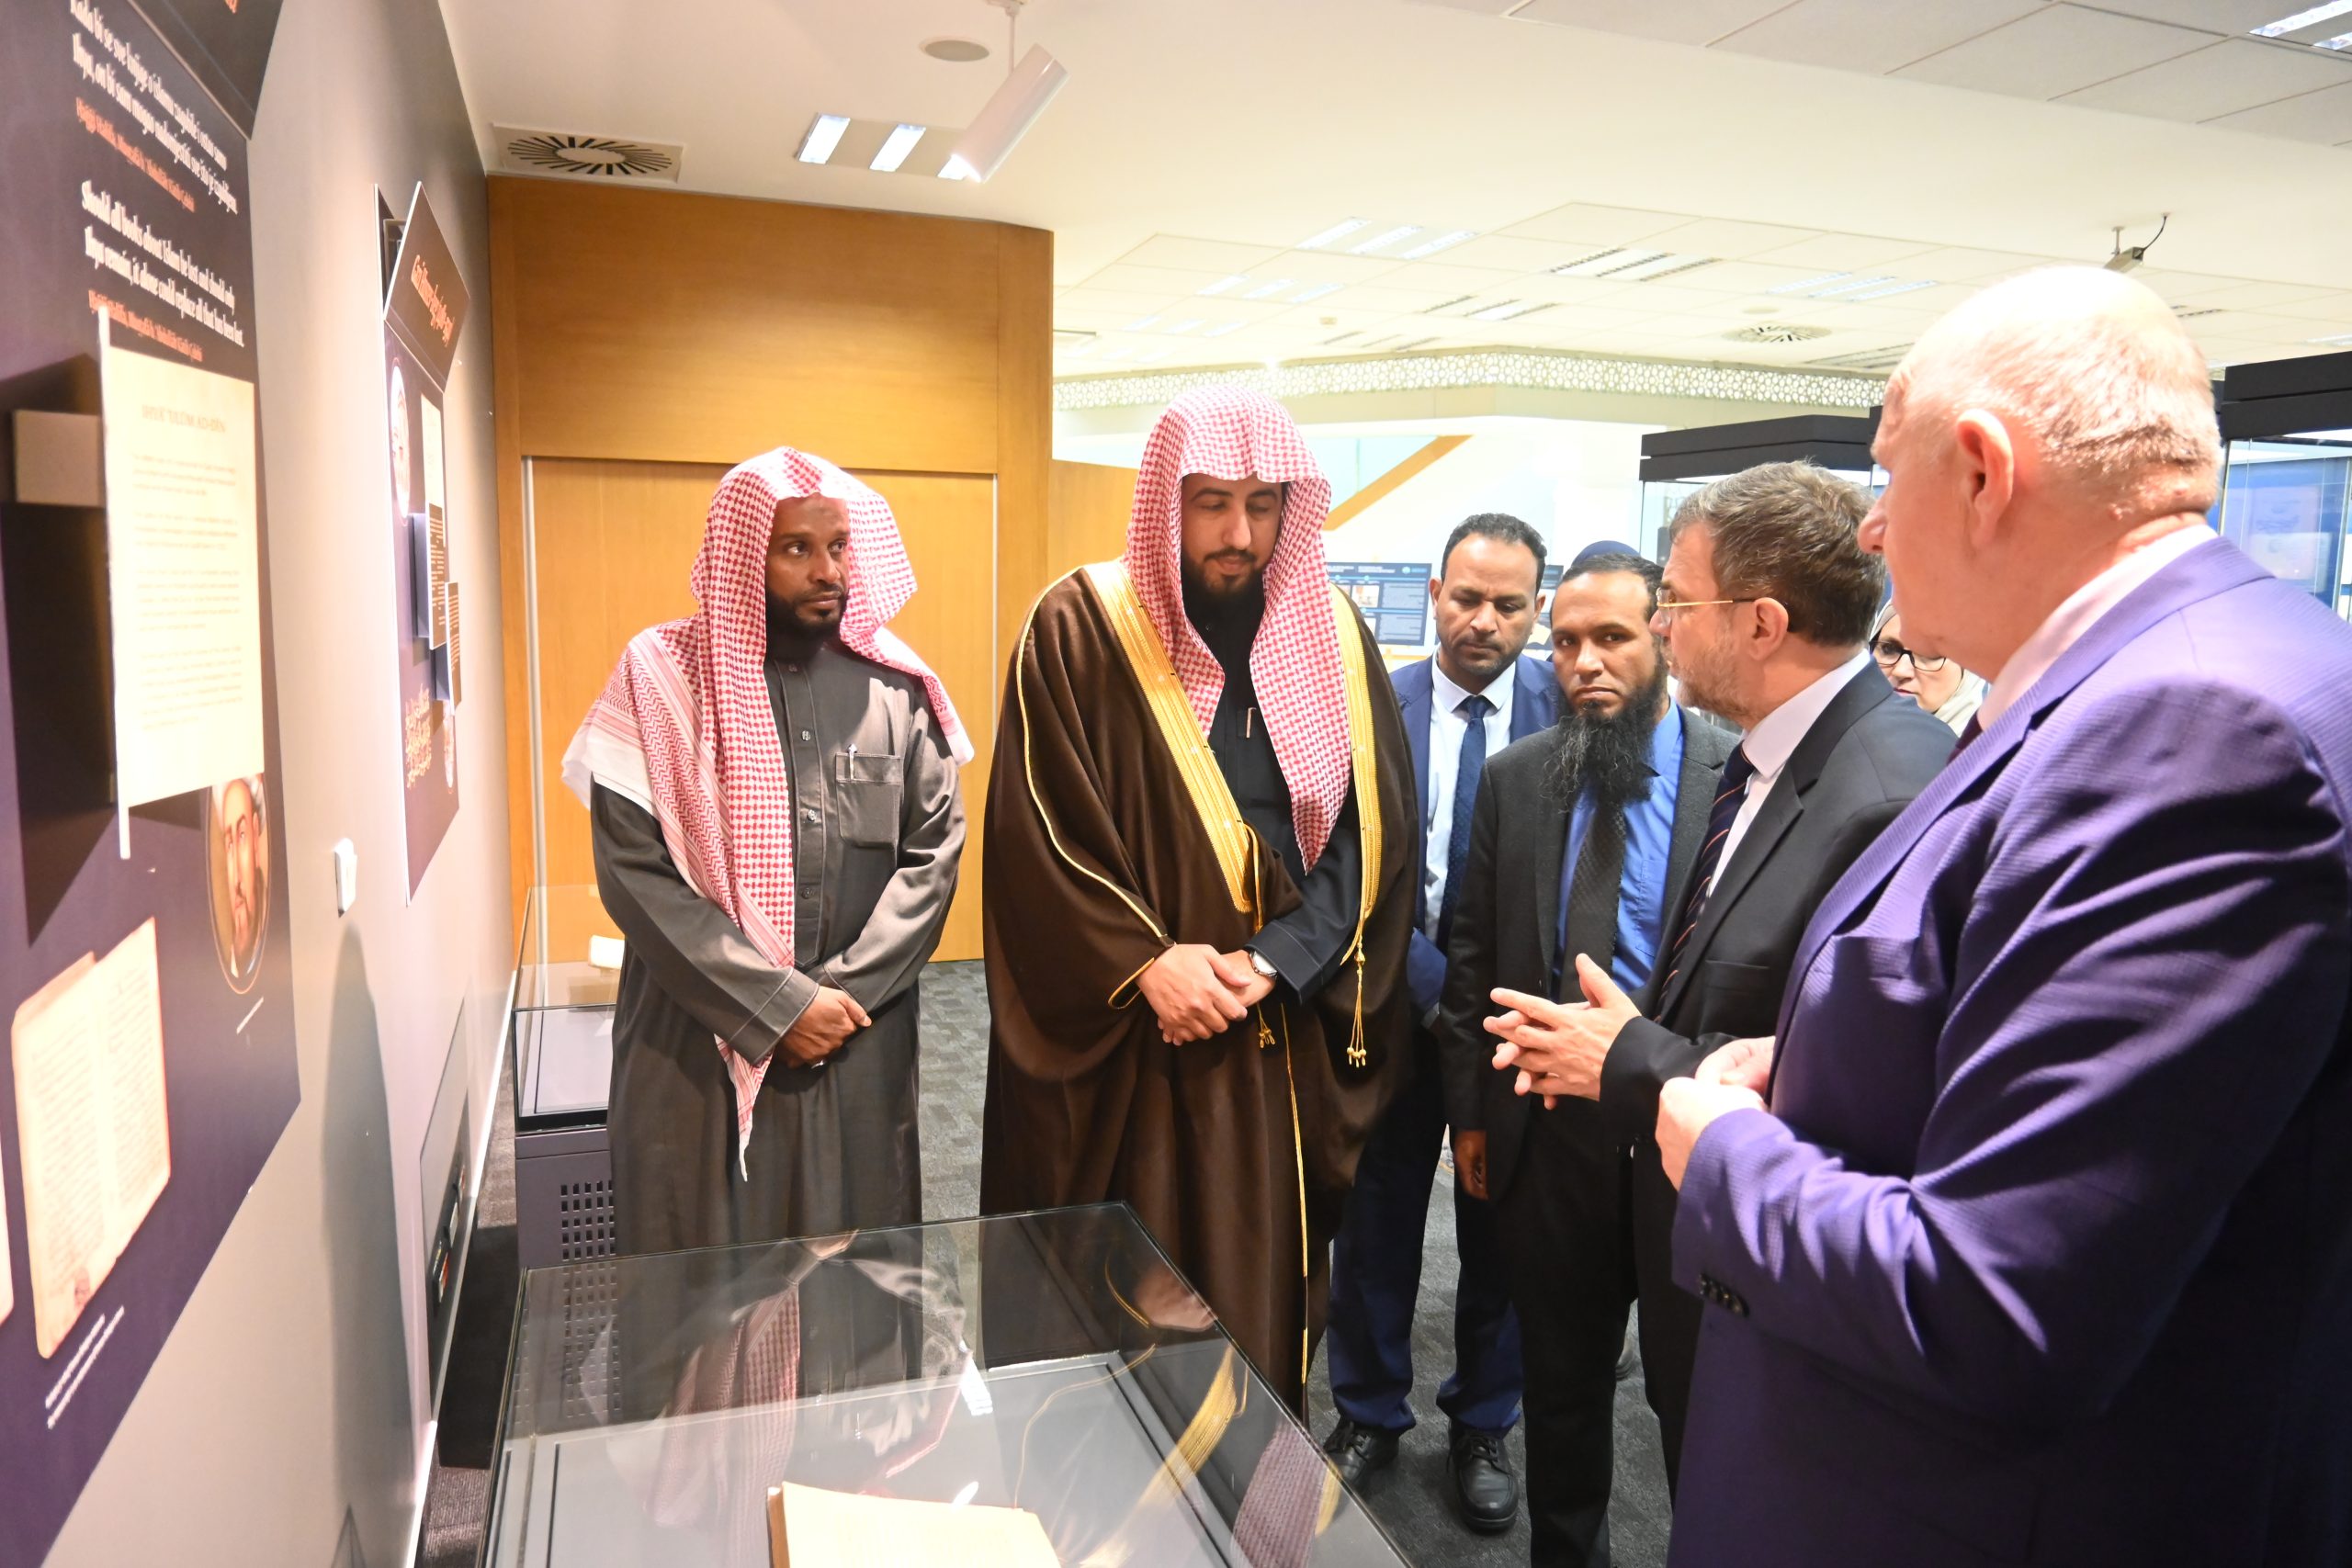 Posjeta delegacije iz Kraljevine Saudijske Arabije Gazi Husrev-begovoj biblioteci